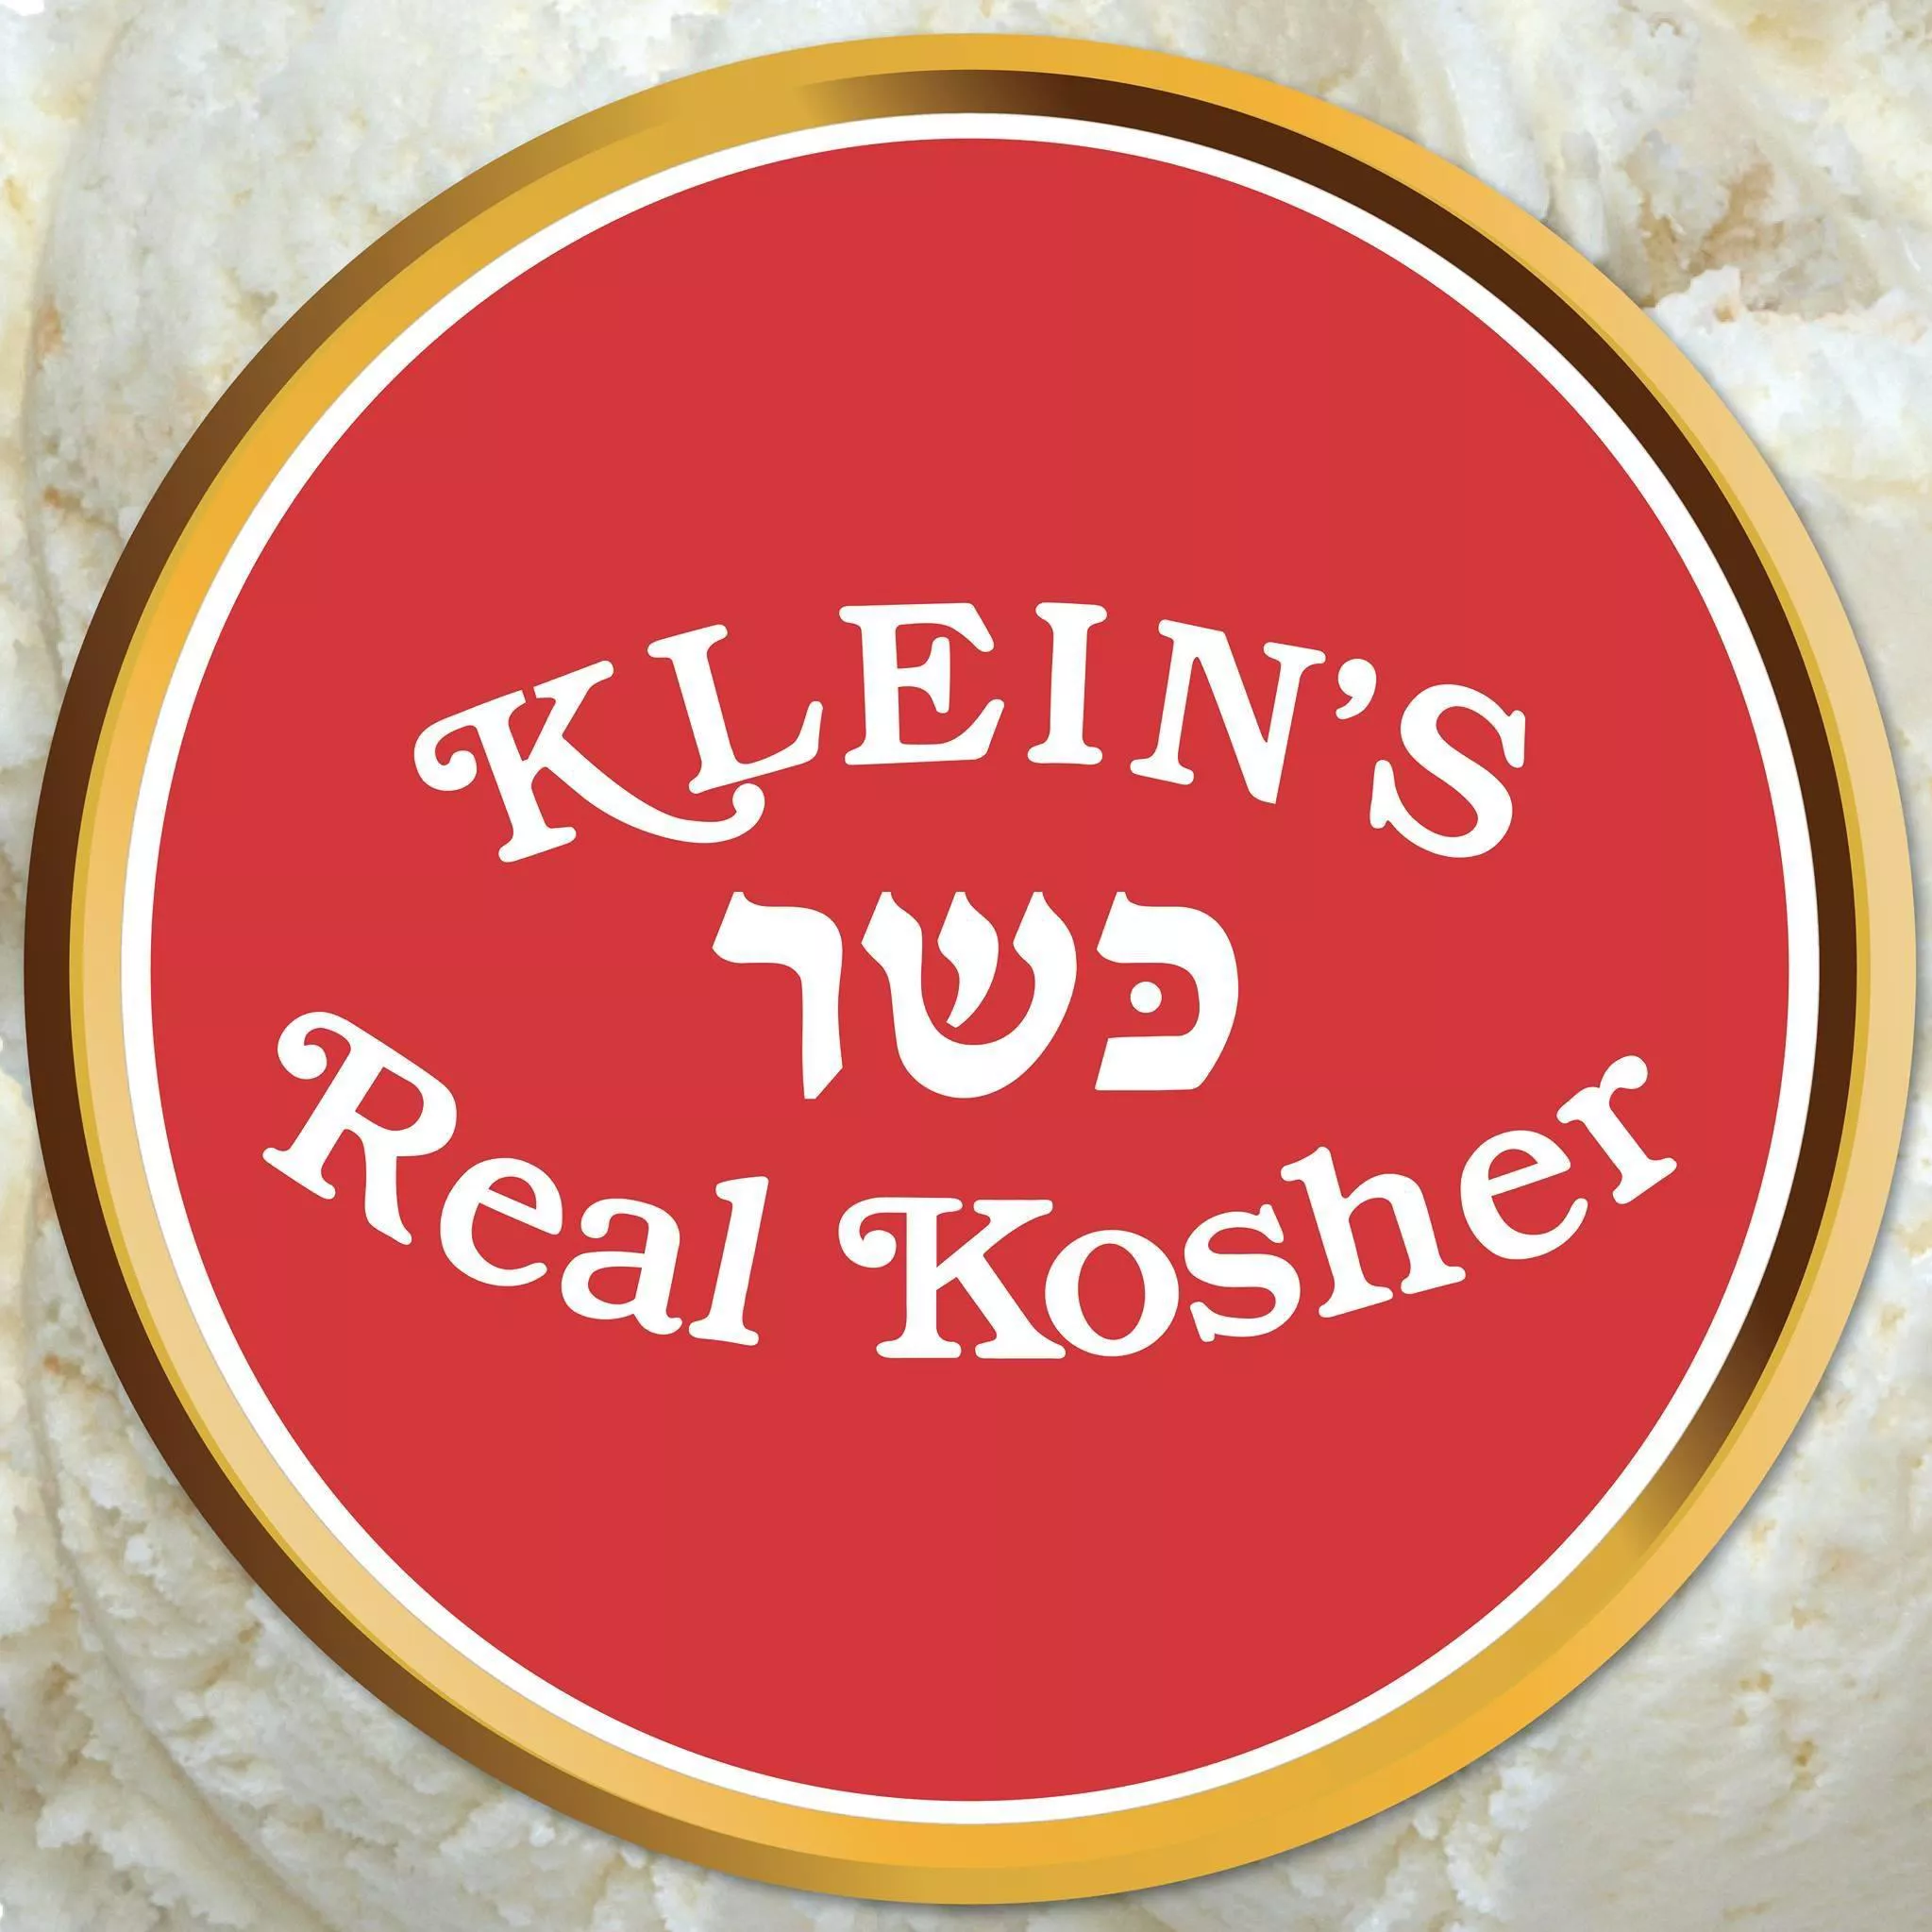 Kleins Kosher Ice Cream Brooklyn